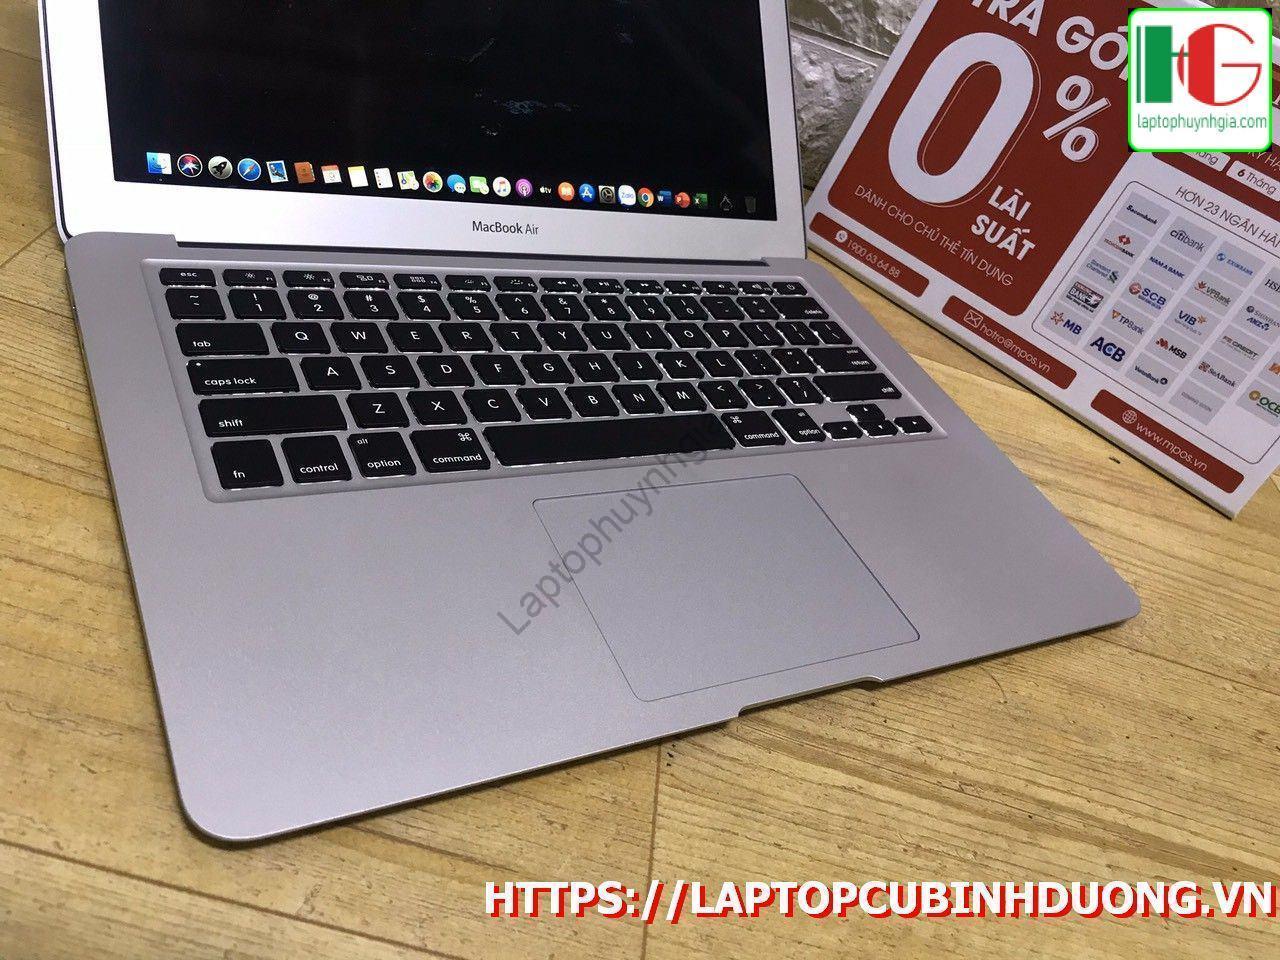 Macbook Air 2017 I5 8g Ssd 128g Lcd 13 Laptopcubinhduong.vn 4 [kích Thước Gốc] Result